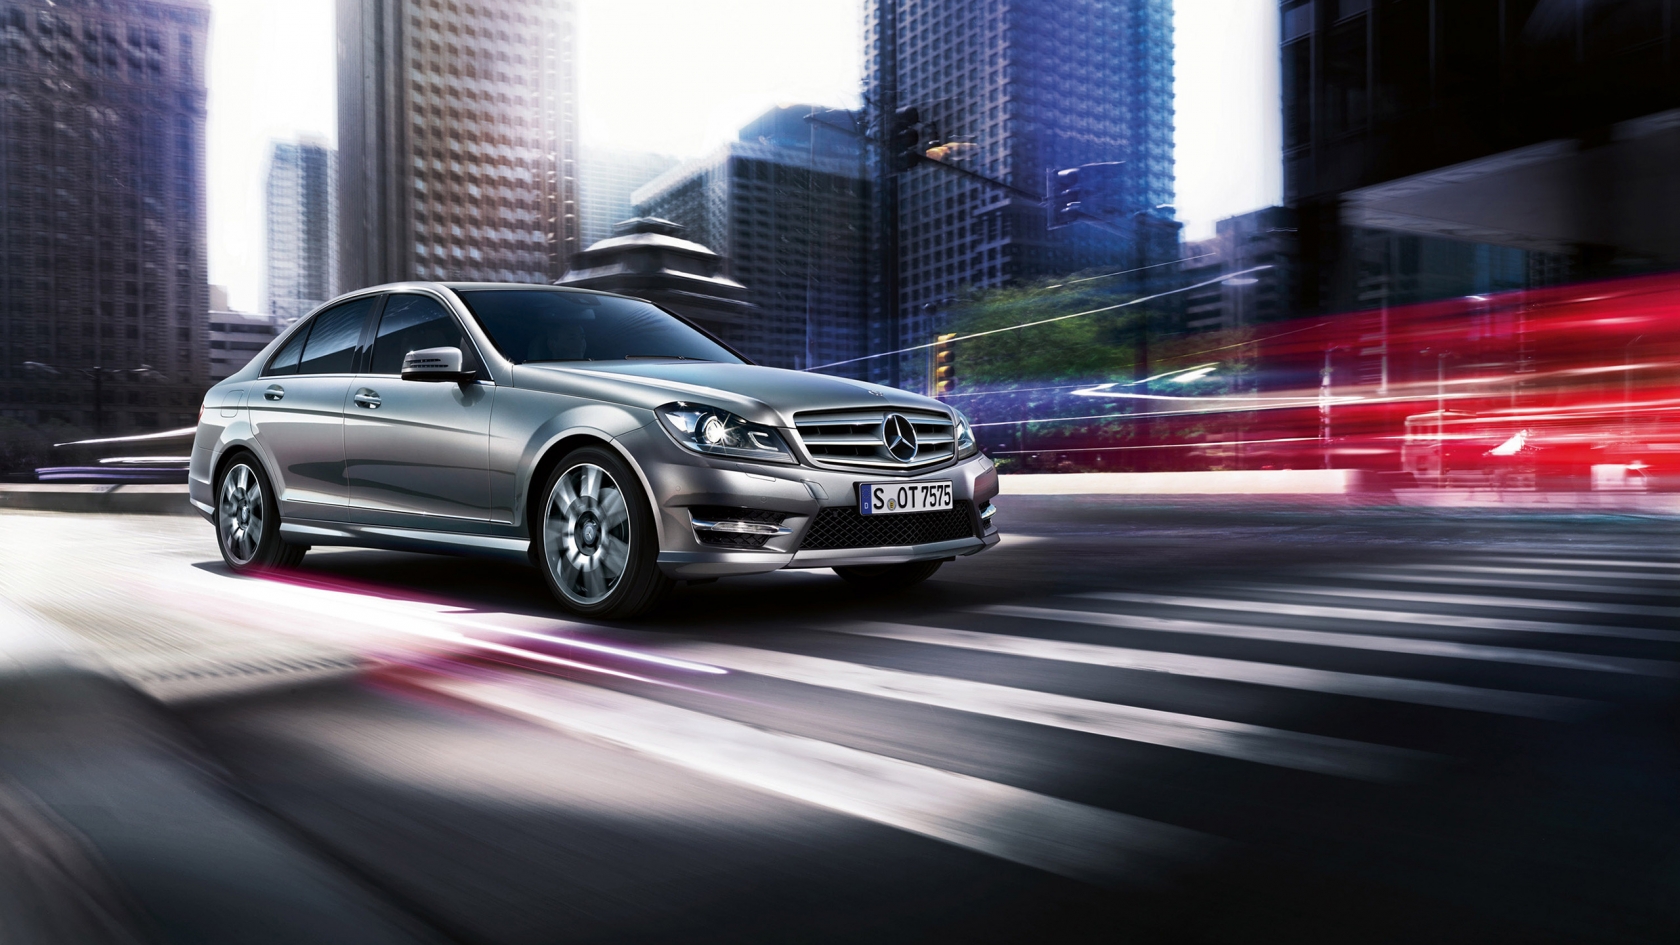 2013 Mercedes-Benz C Class for 1680 x 945 HDTV resolution